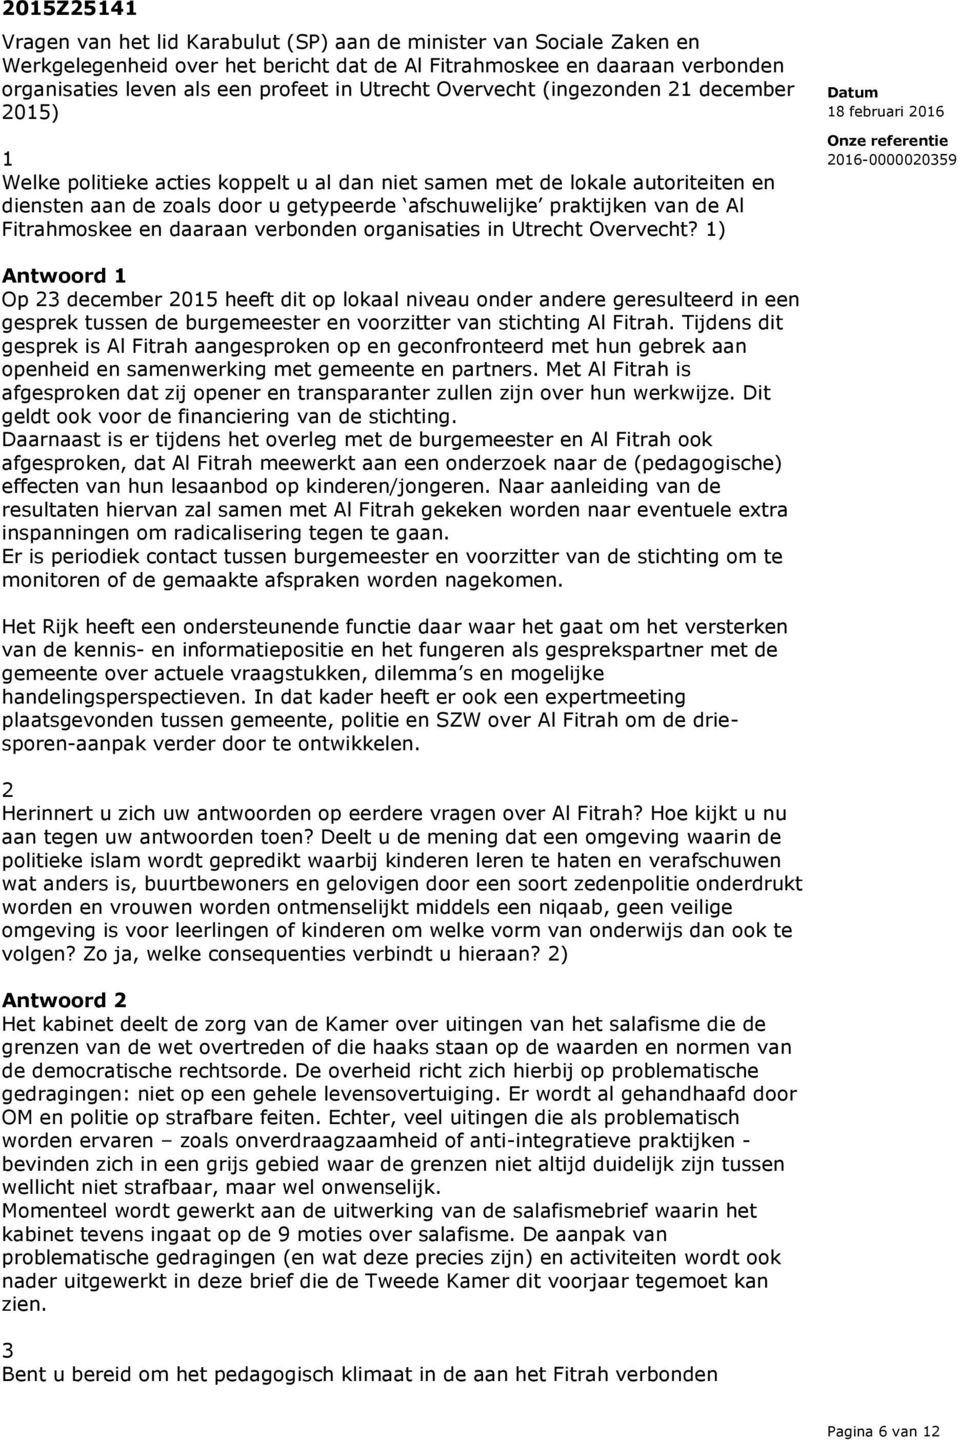 de Al Fitrahmoskee en daaraan verbonden organisaties in Utrecht Overvecht?